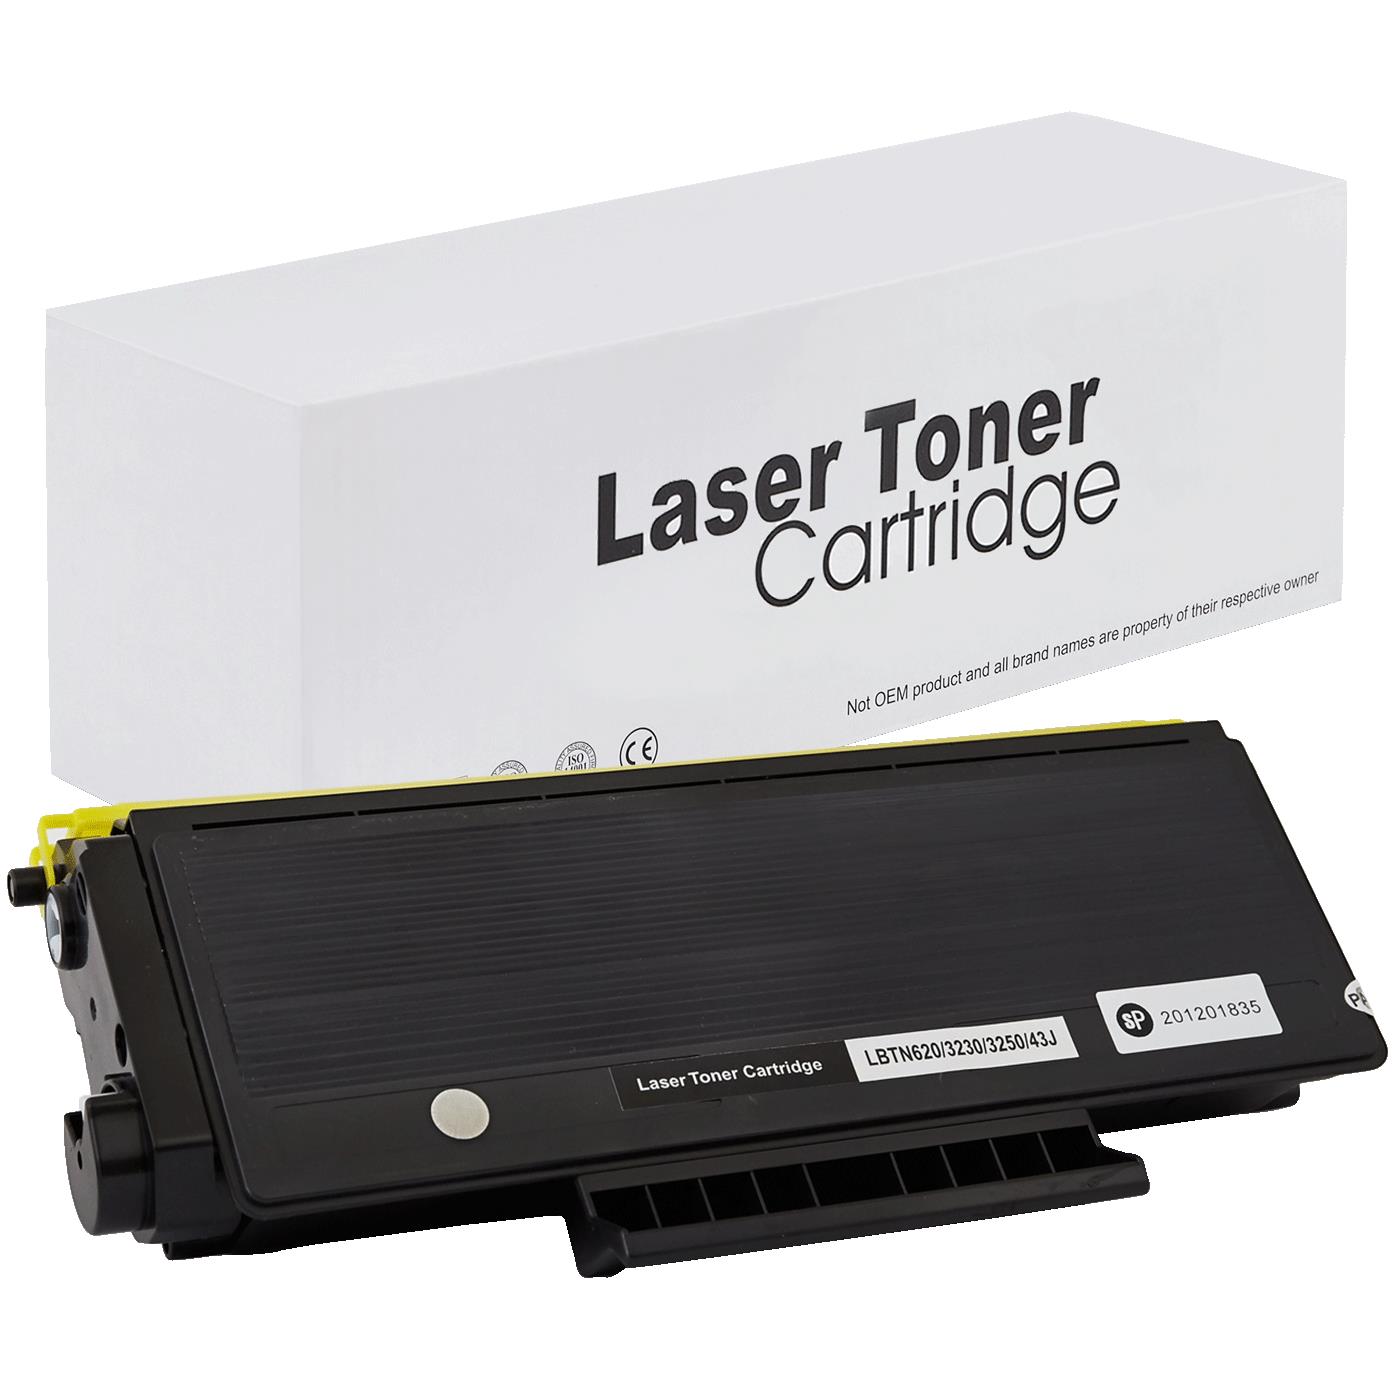 съвместима тонер касета за принтери и печатащи устройства на Brother HL 5380 D Toner BR-3230 | TN3230. Ниски цени, прецизно изпълнение, високо качество.